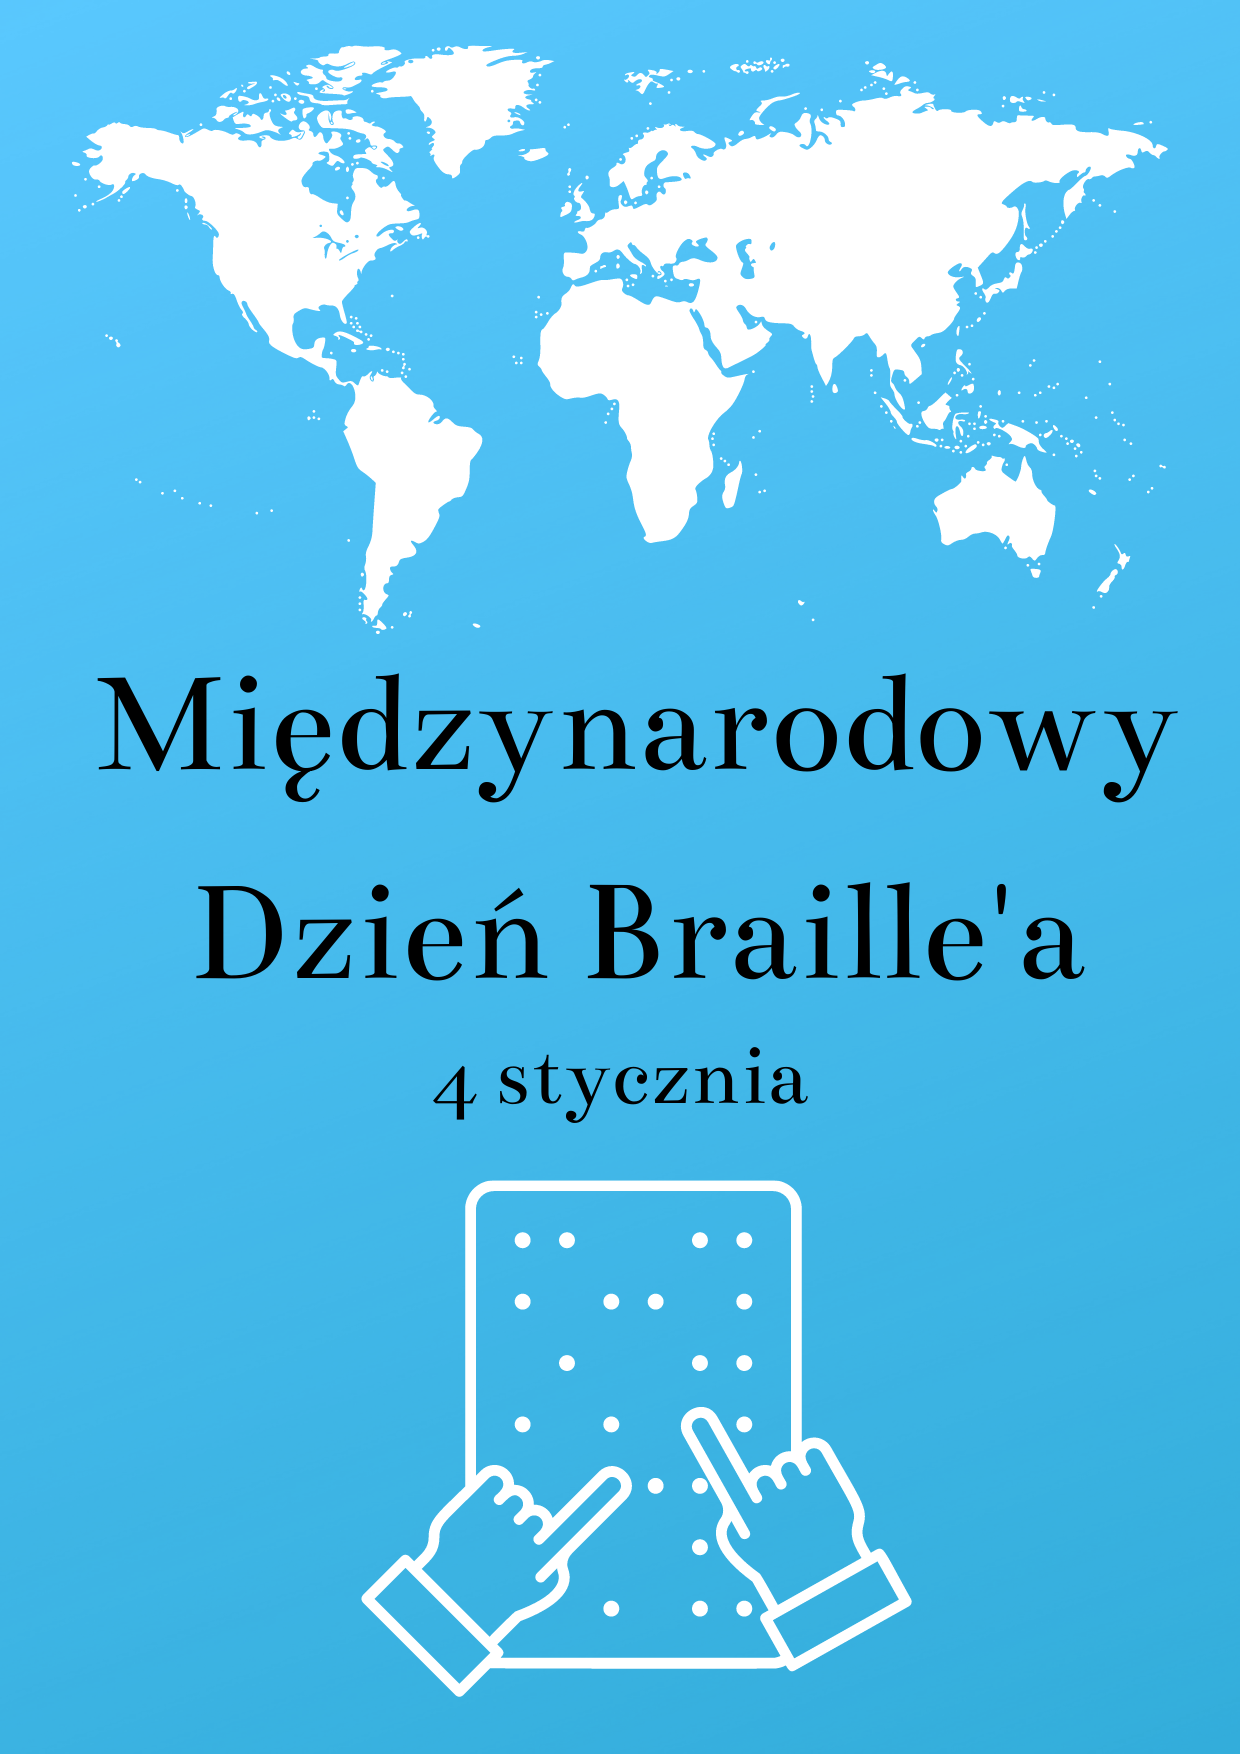 Dzisiaj Międzynarodowy Dzień Braille’a